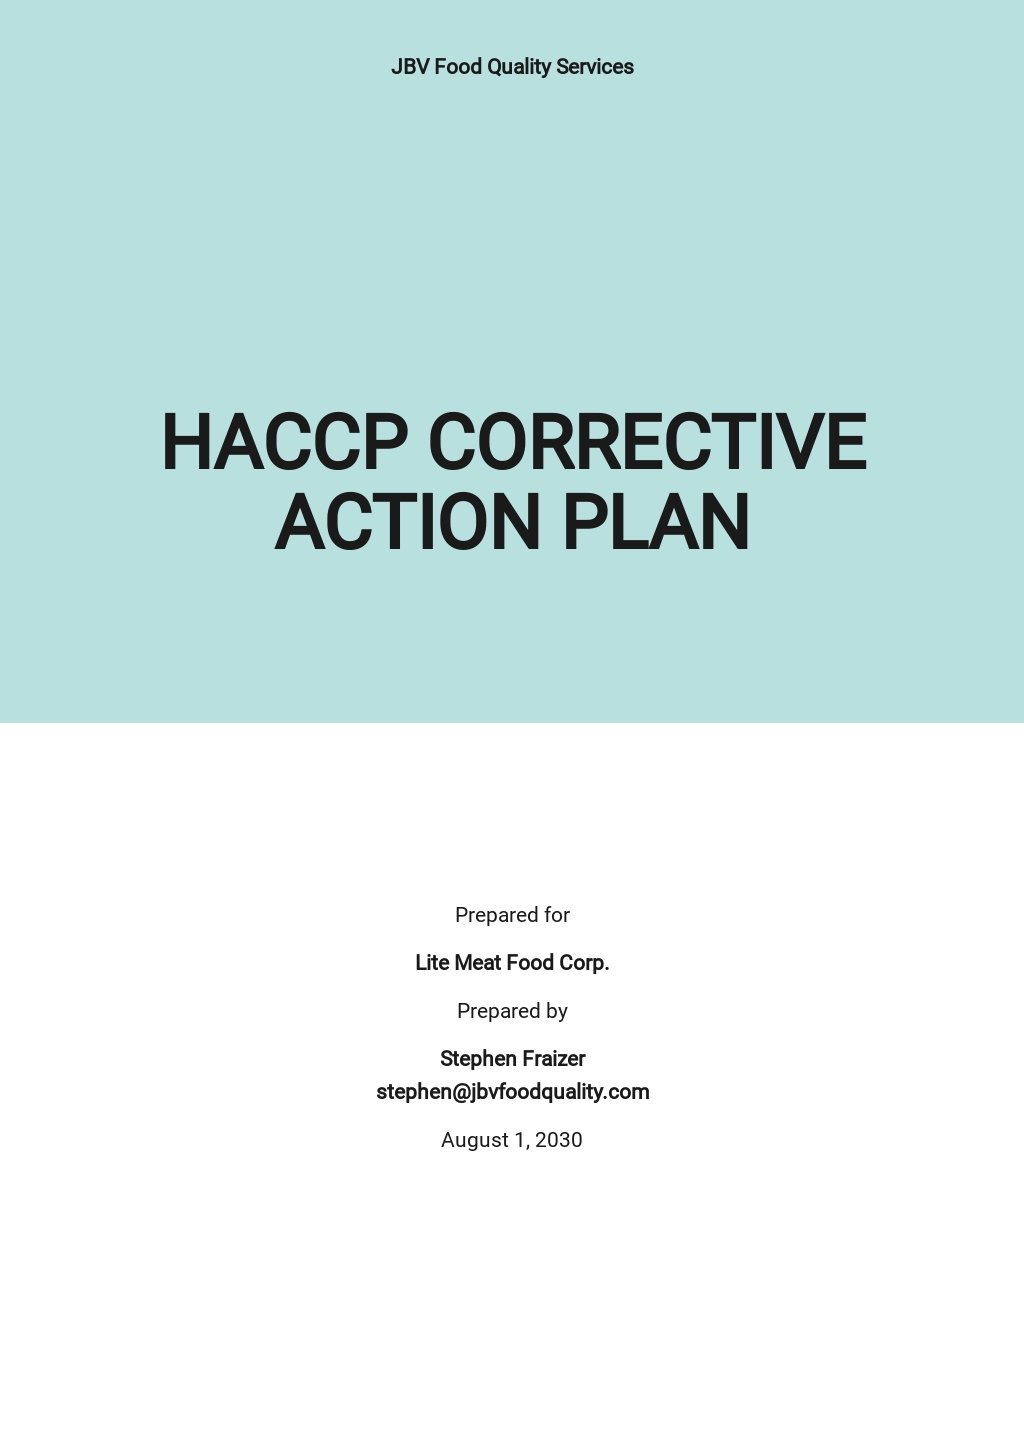 HACCP Corrective Action Plan Template